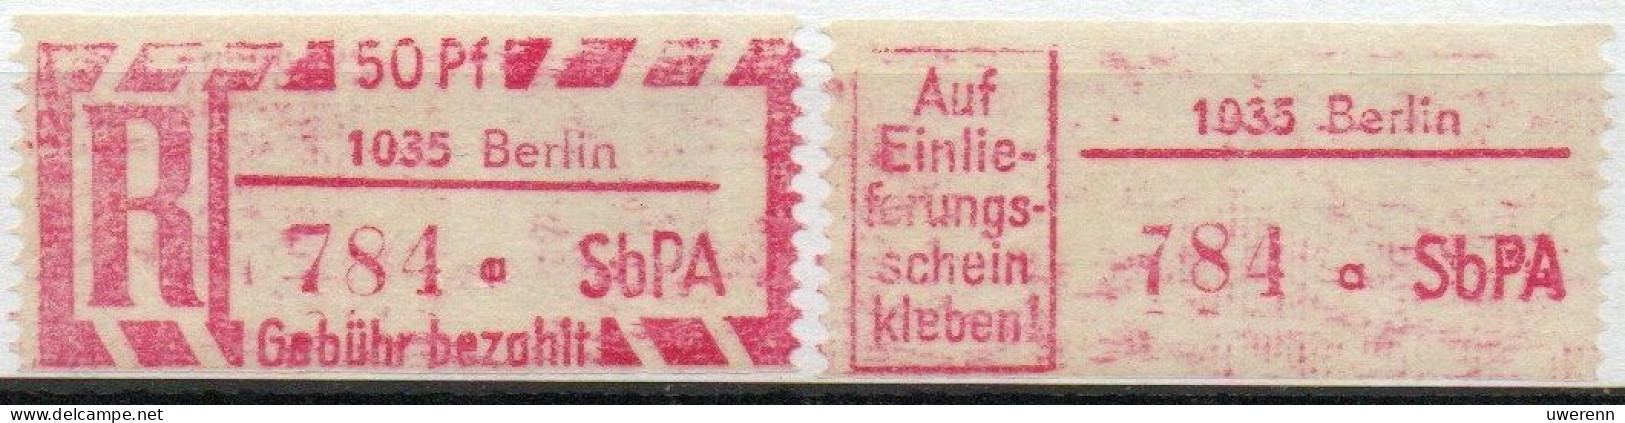 DDR Einschreibemarke Berlin SbPA Postfrisch, EM2B-1035aI Gt - Etiquetas De Certificado